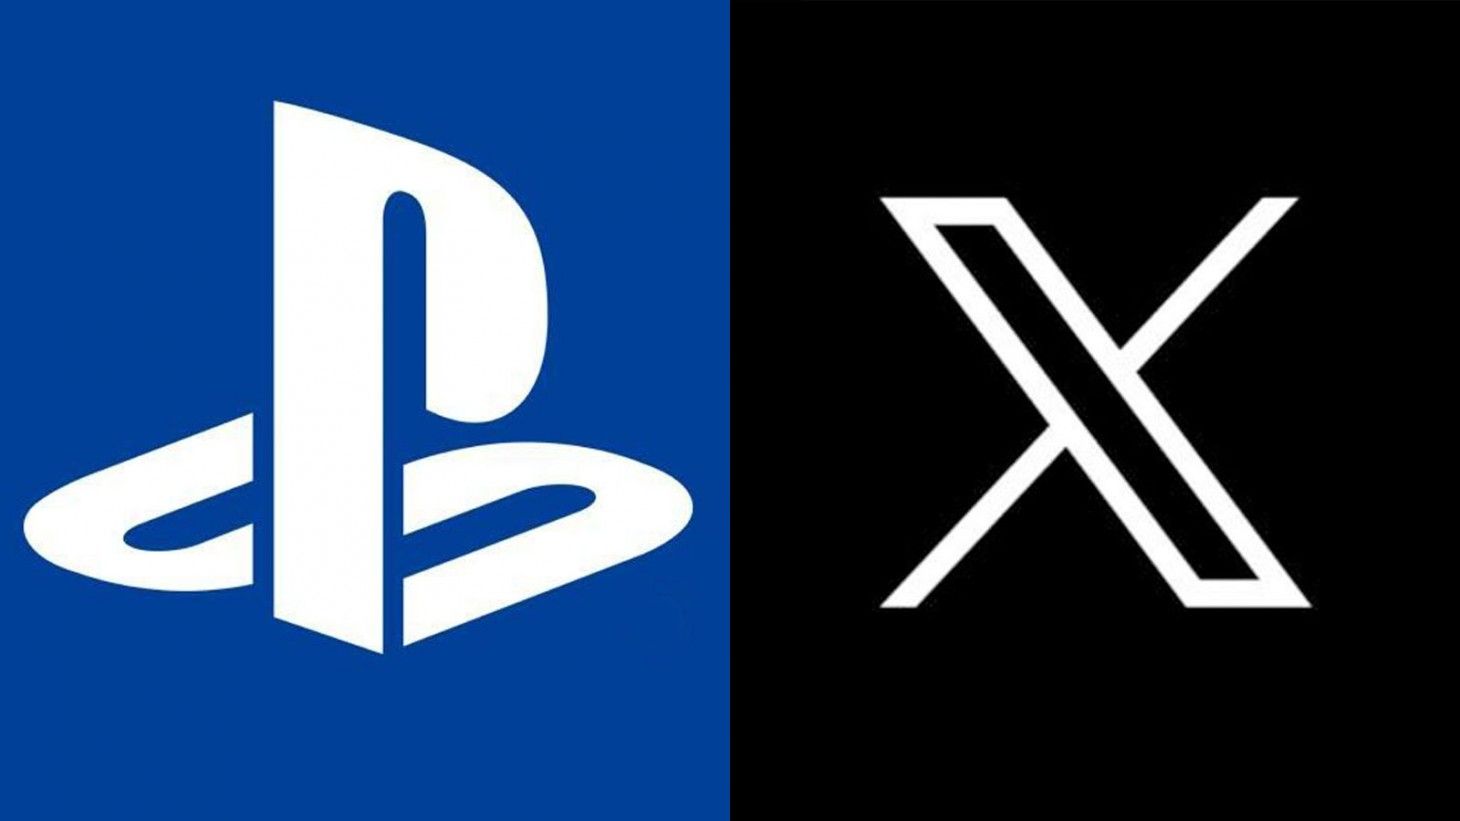 L'addio di PlayStation a X (Twitter)